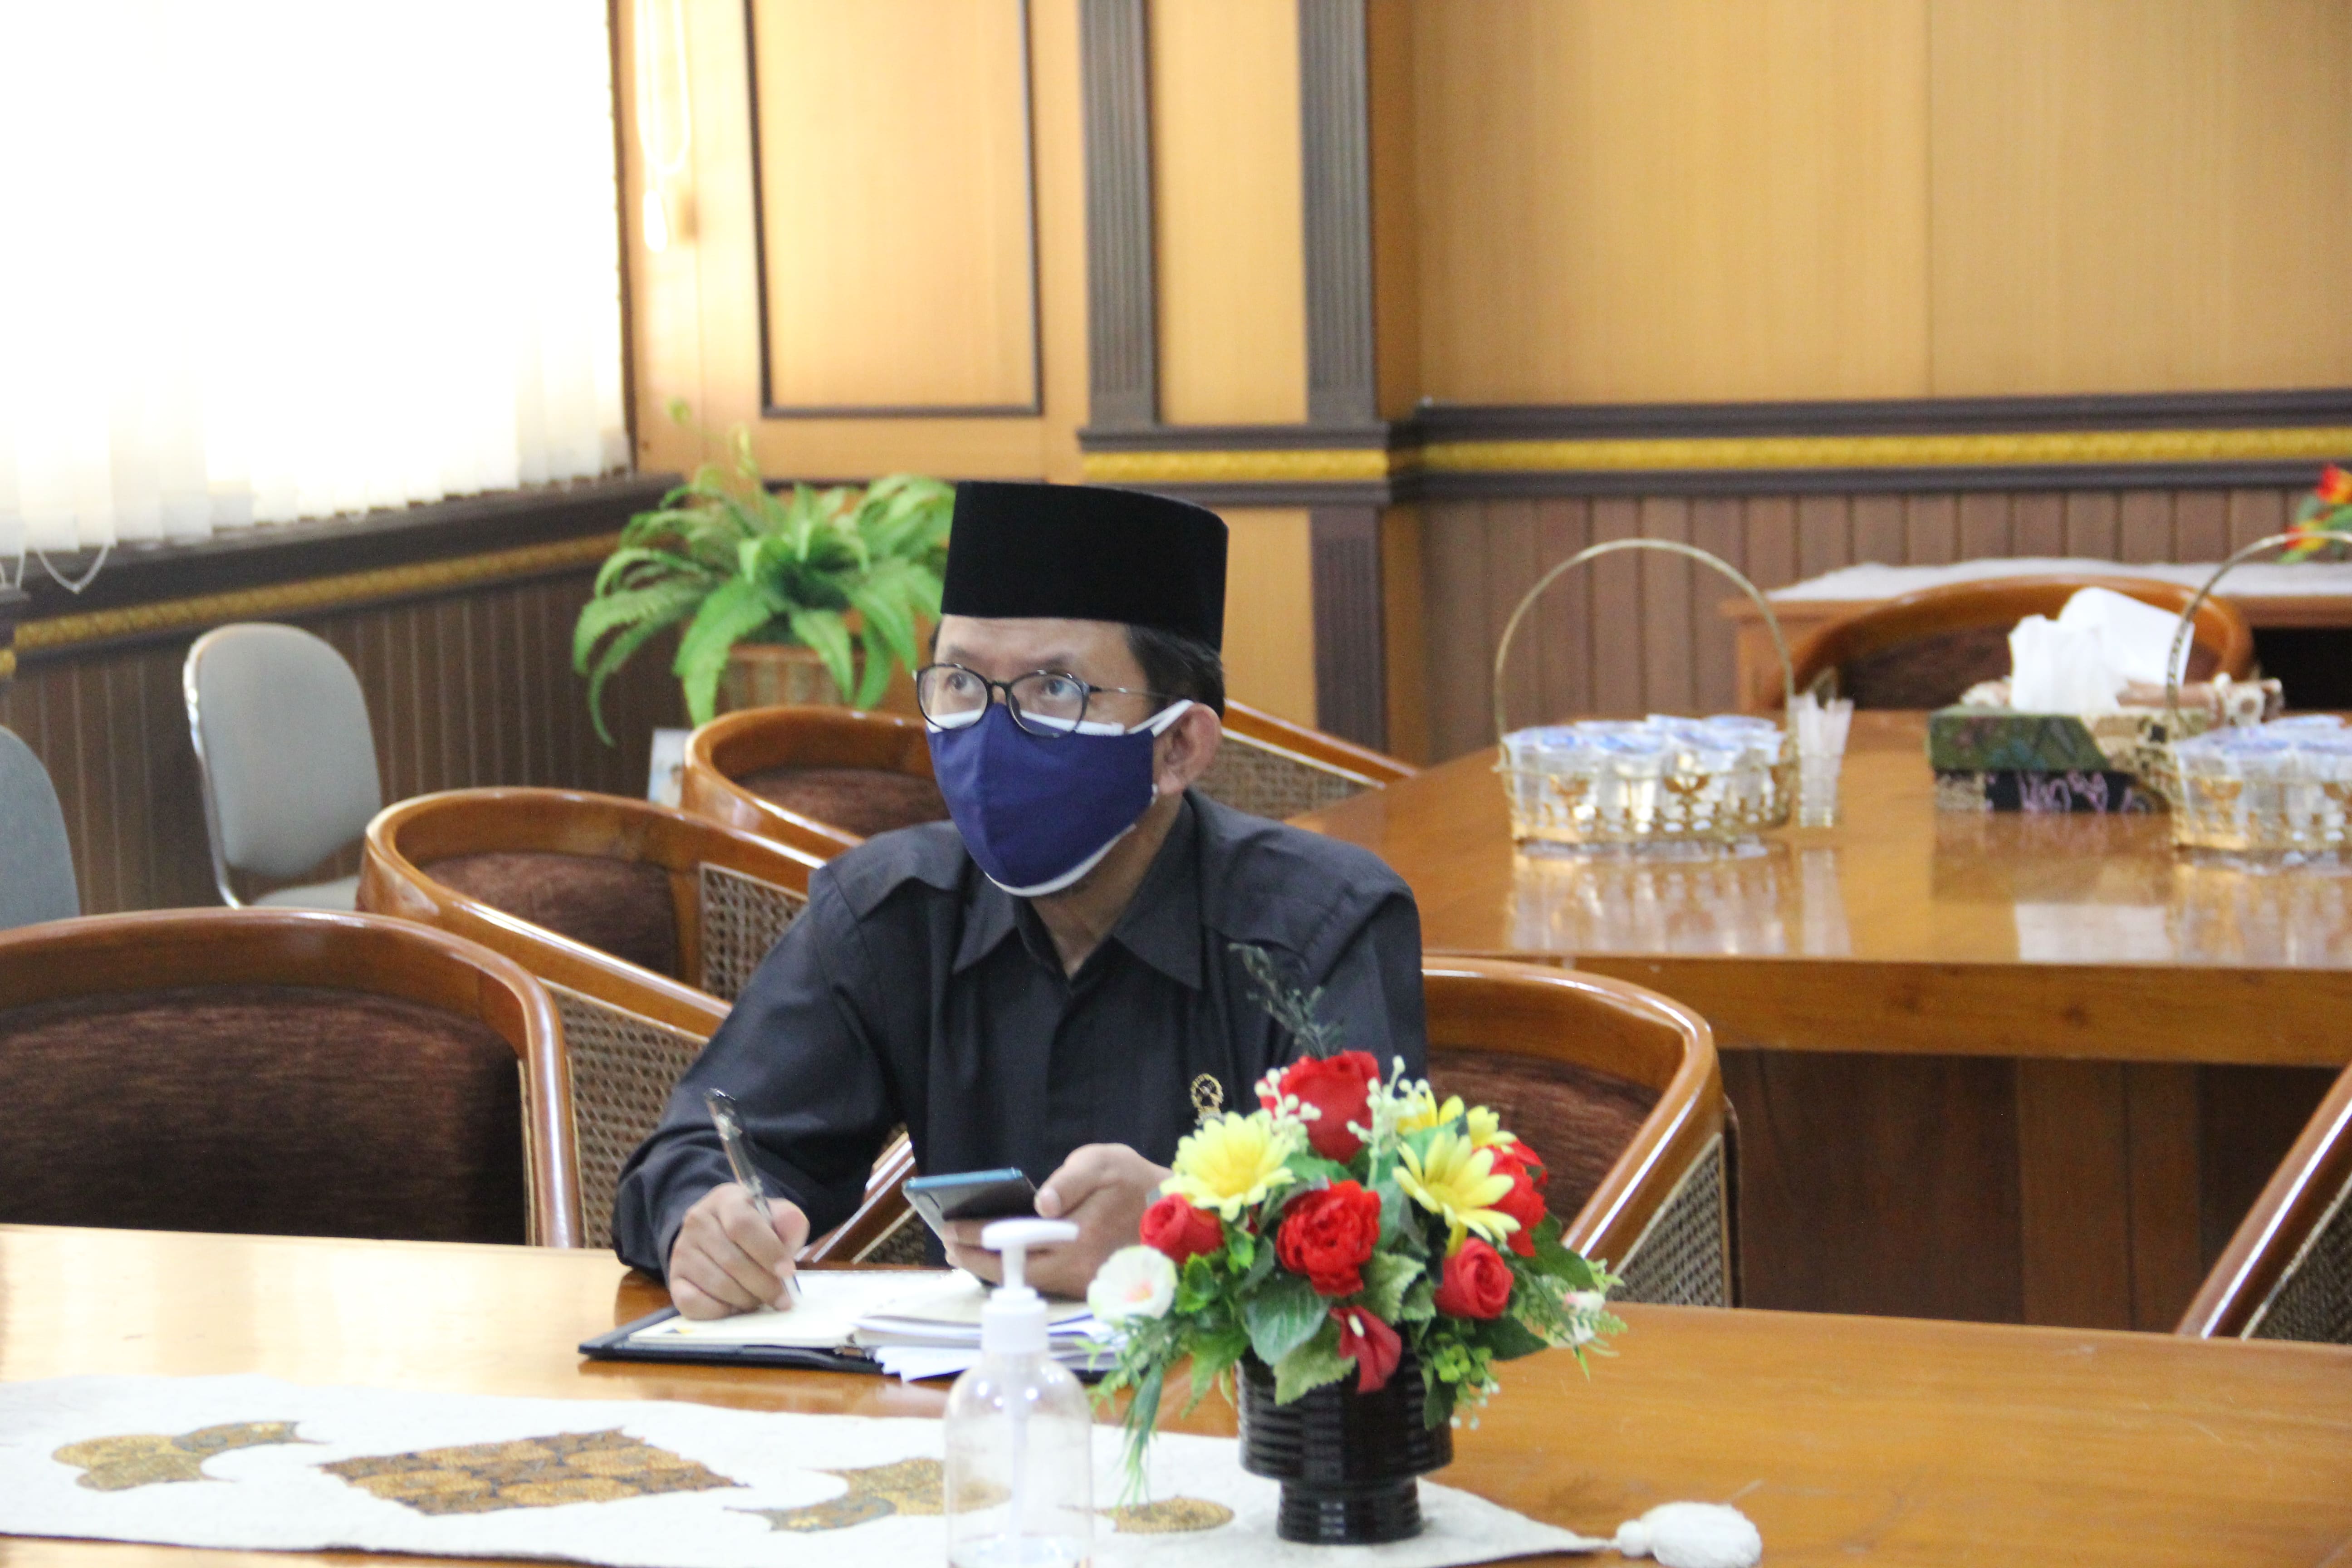 Wakil Ketua Pengadilan Negeri Yogyakarta Mengikuti Kegiatan Pray From Home secara Virtual